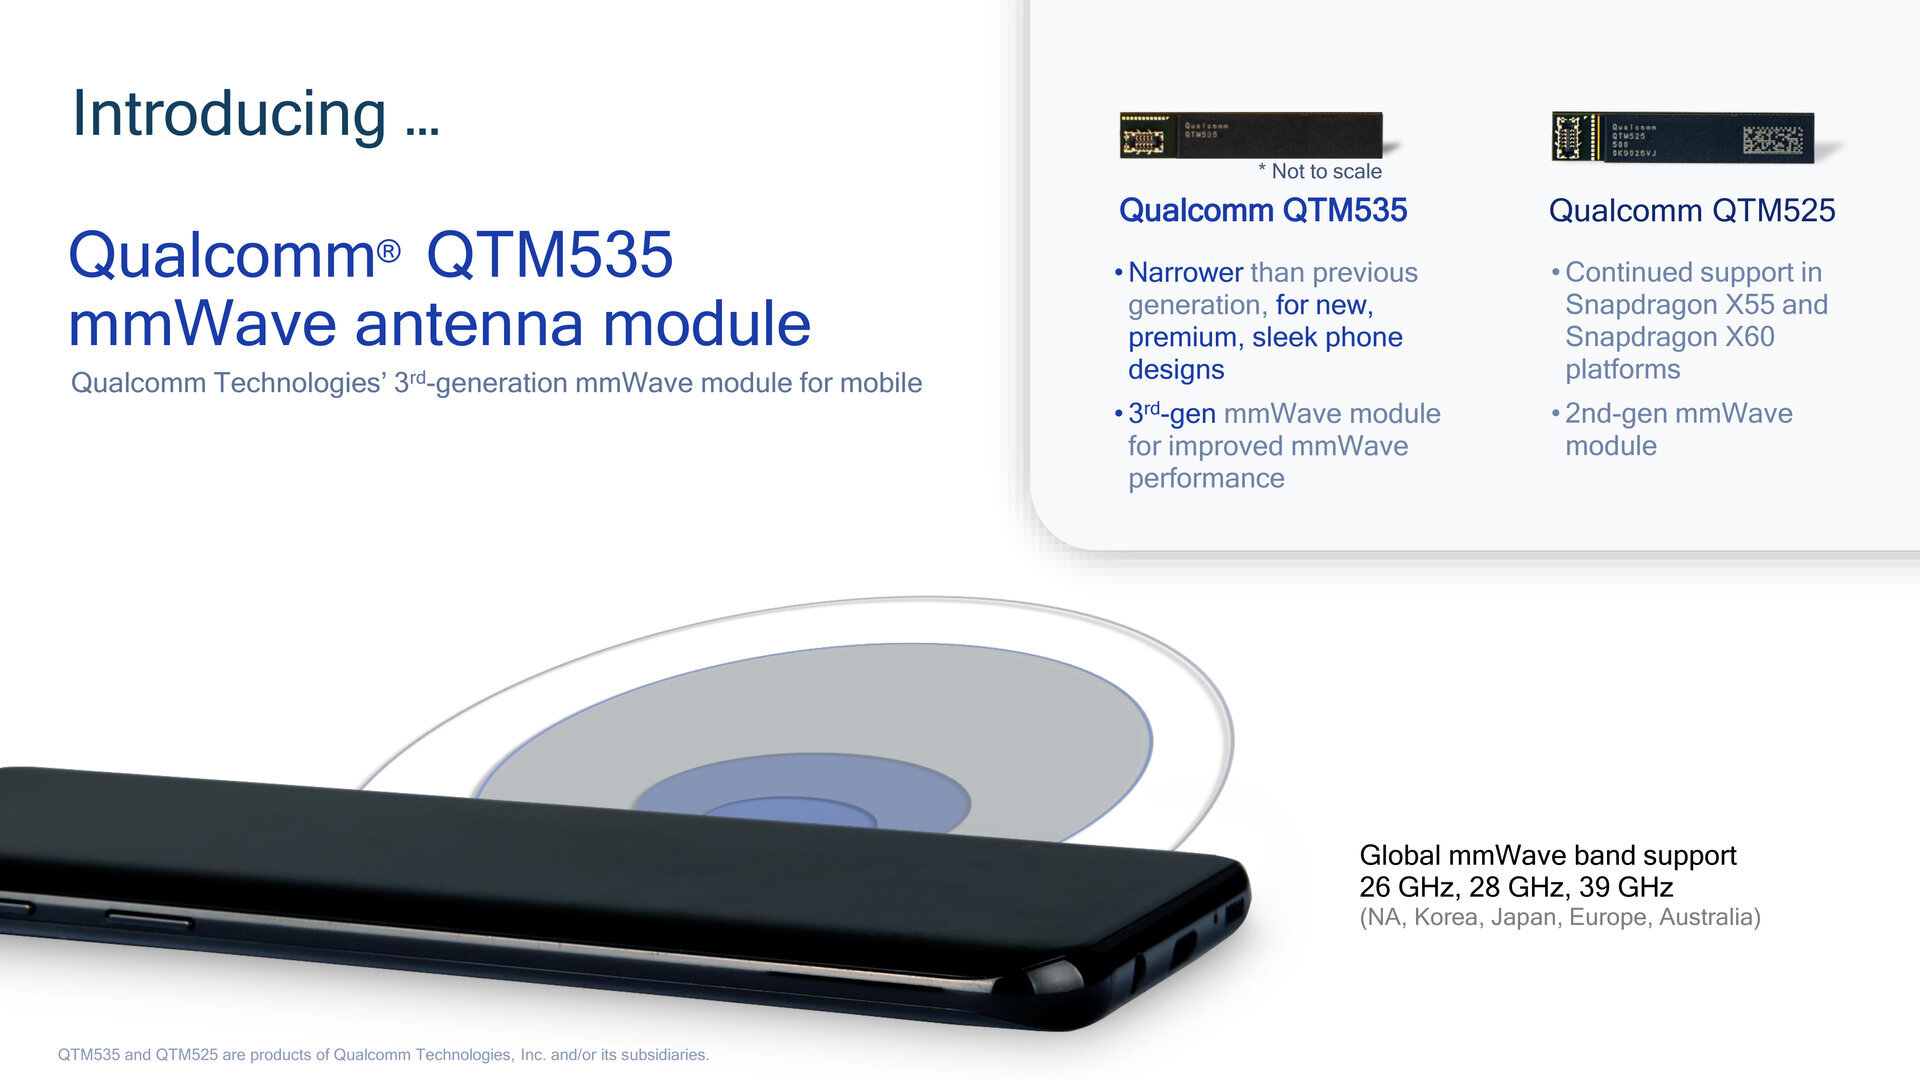 Das QTM535 kommt erst 2021 mit dem Snapdragon X60